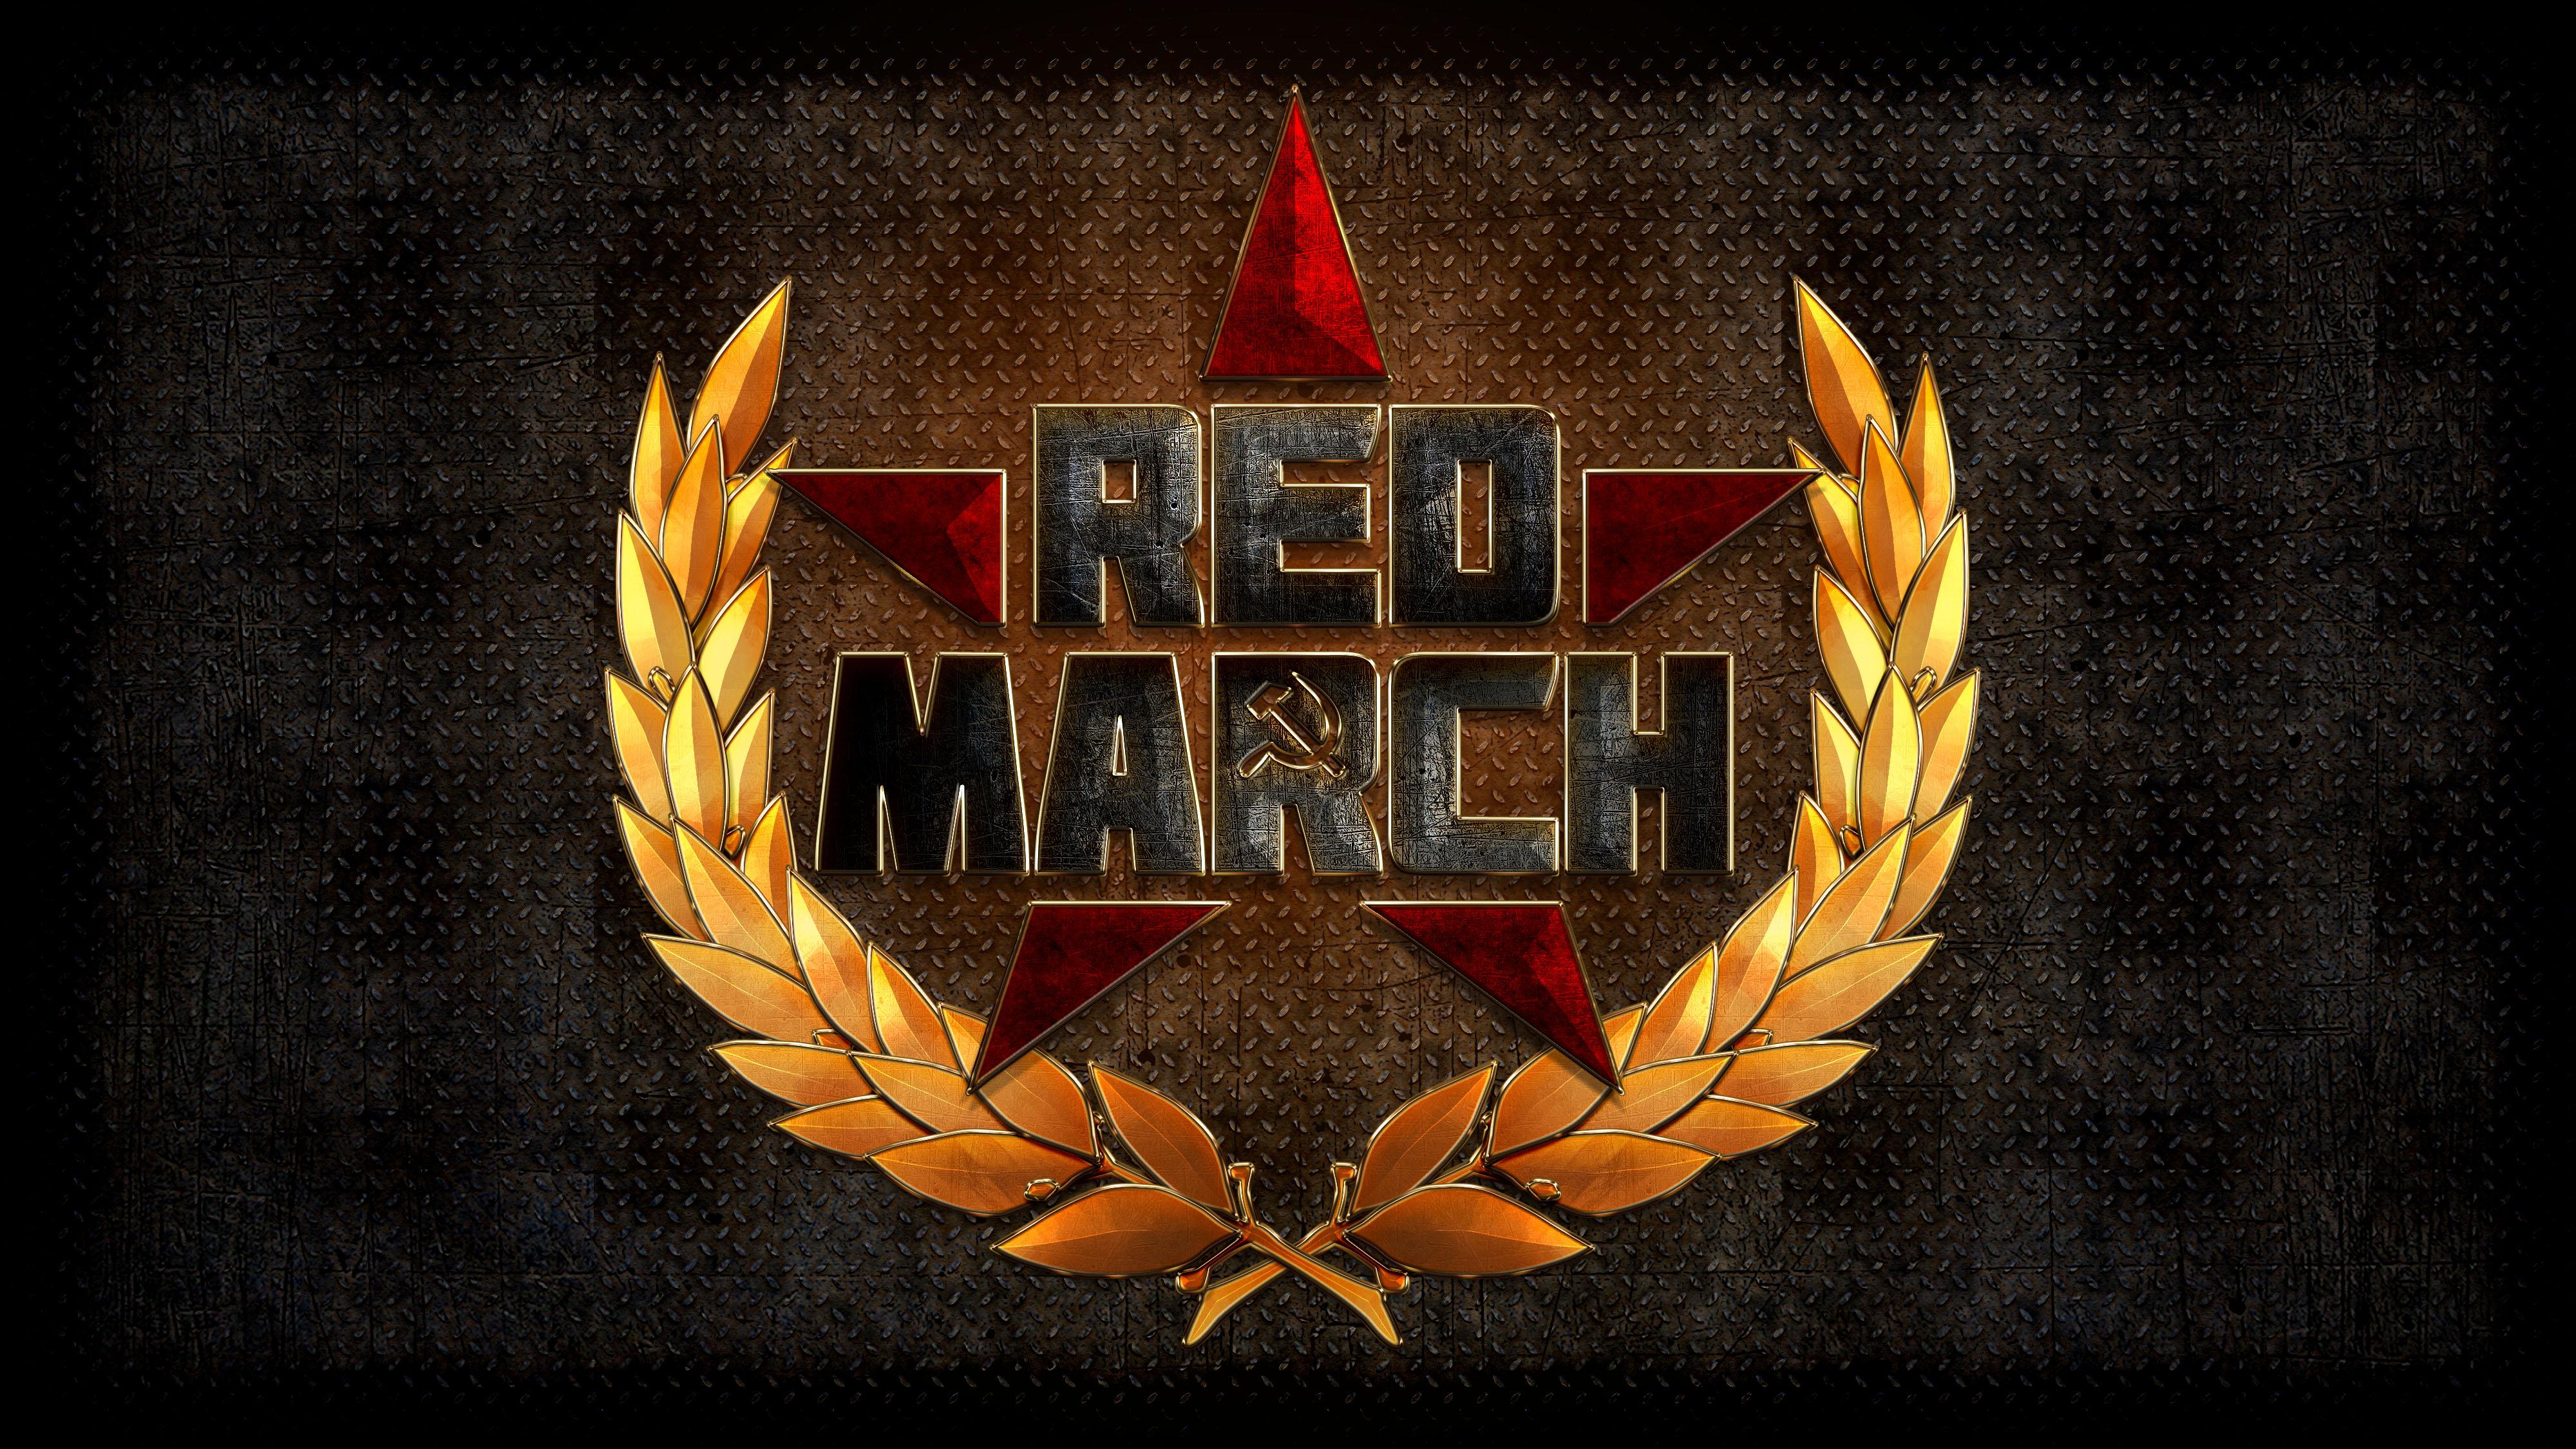 Red_March_wallpaper_wide_001.jpg.49307a073434f99e383a51d1305228c2.jpg